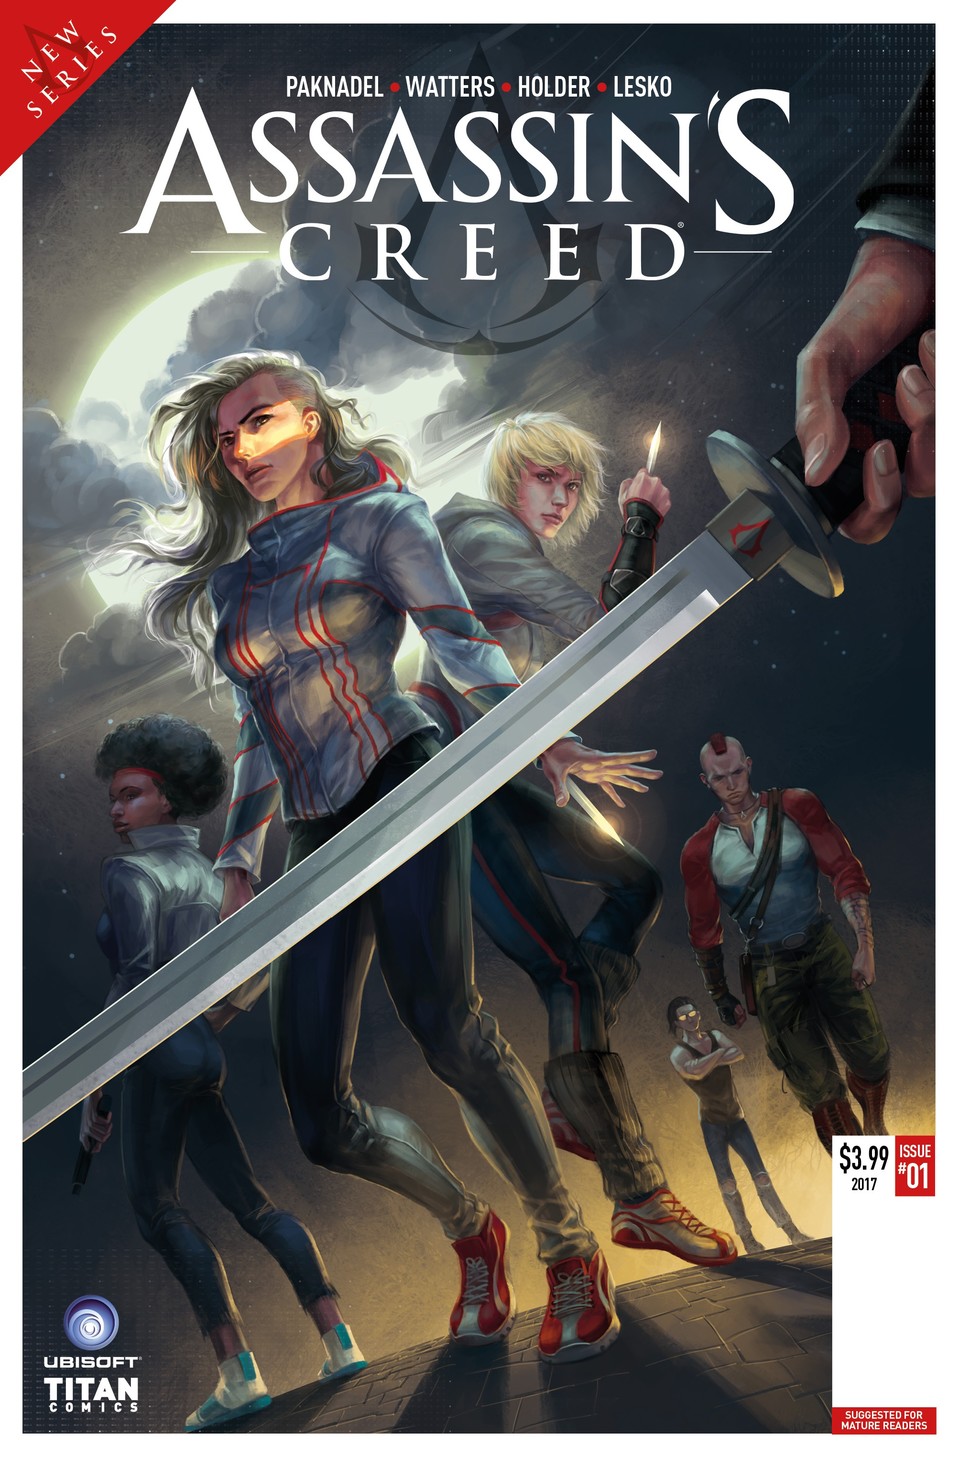 Das Cover zum kommenden Assassin's Creed Comic.